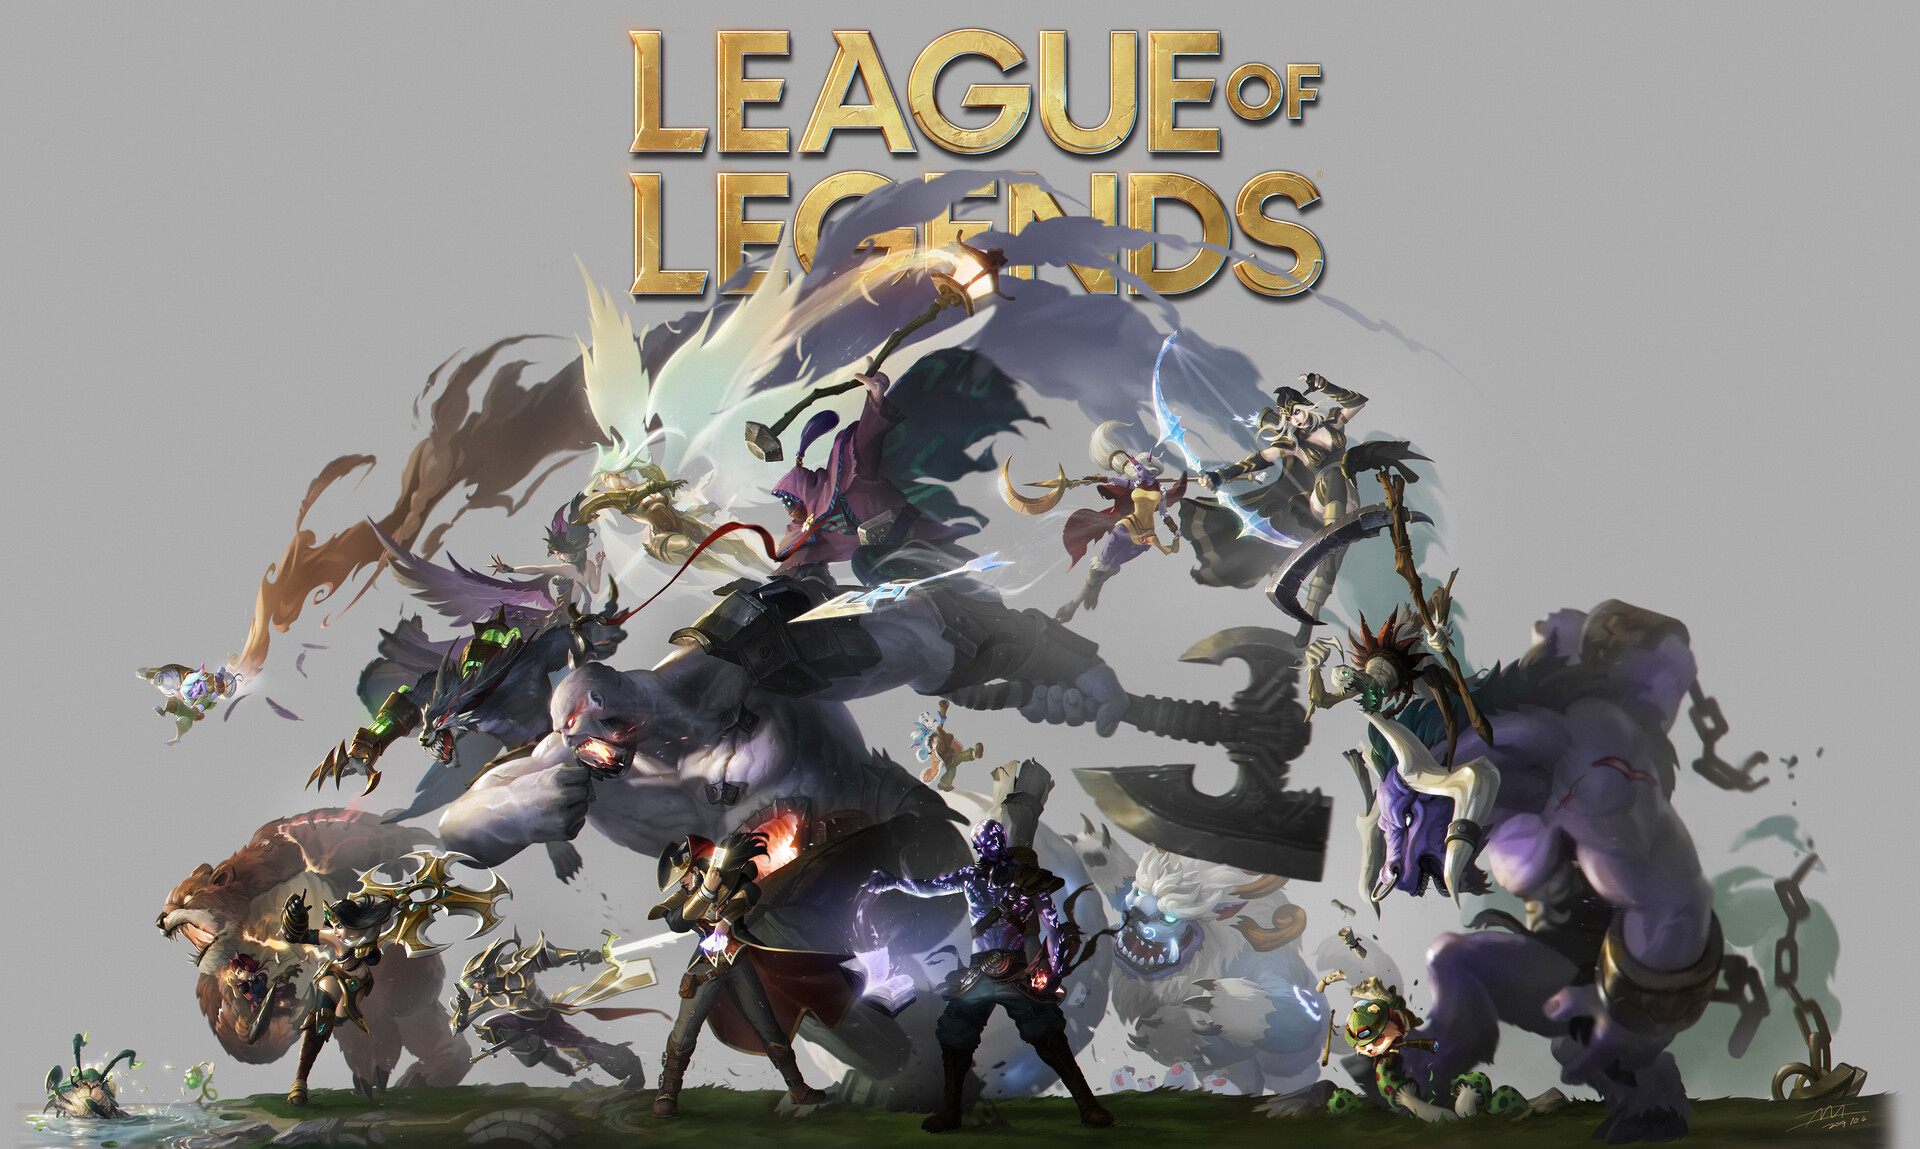 League of Legends 10th Anniversary wall art by Jun Seong Park